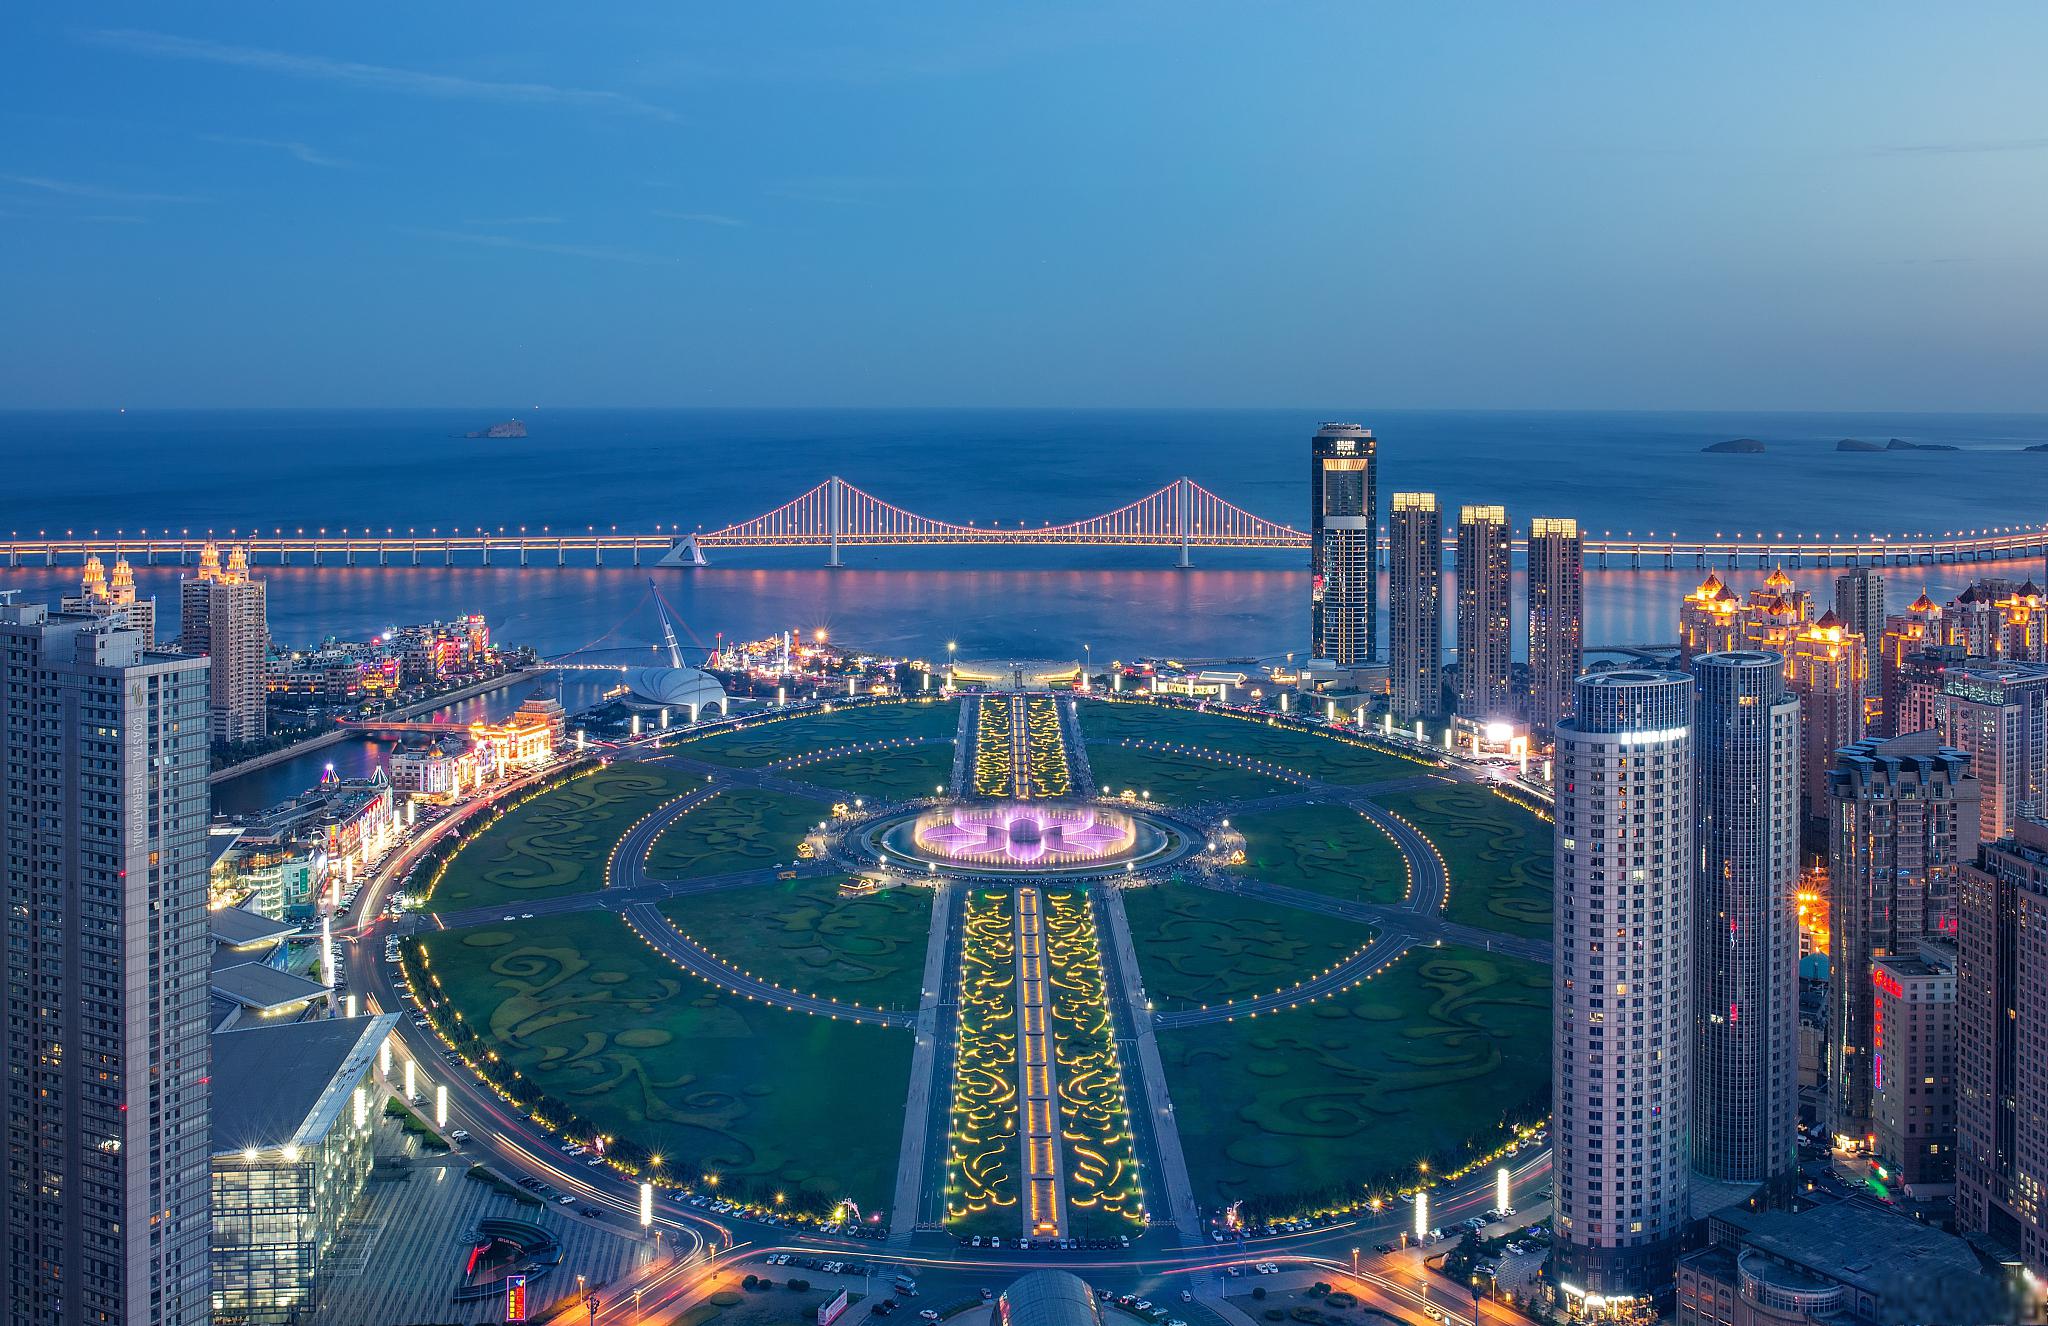 大连自由行旅游攻略 大连是中国东北地区的一个美丽海滨城市,拥有许多